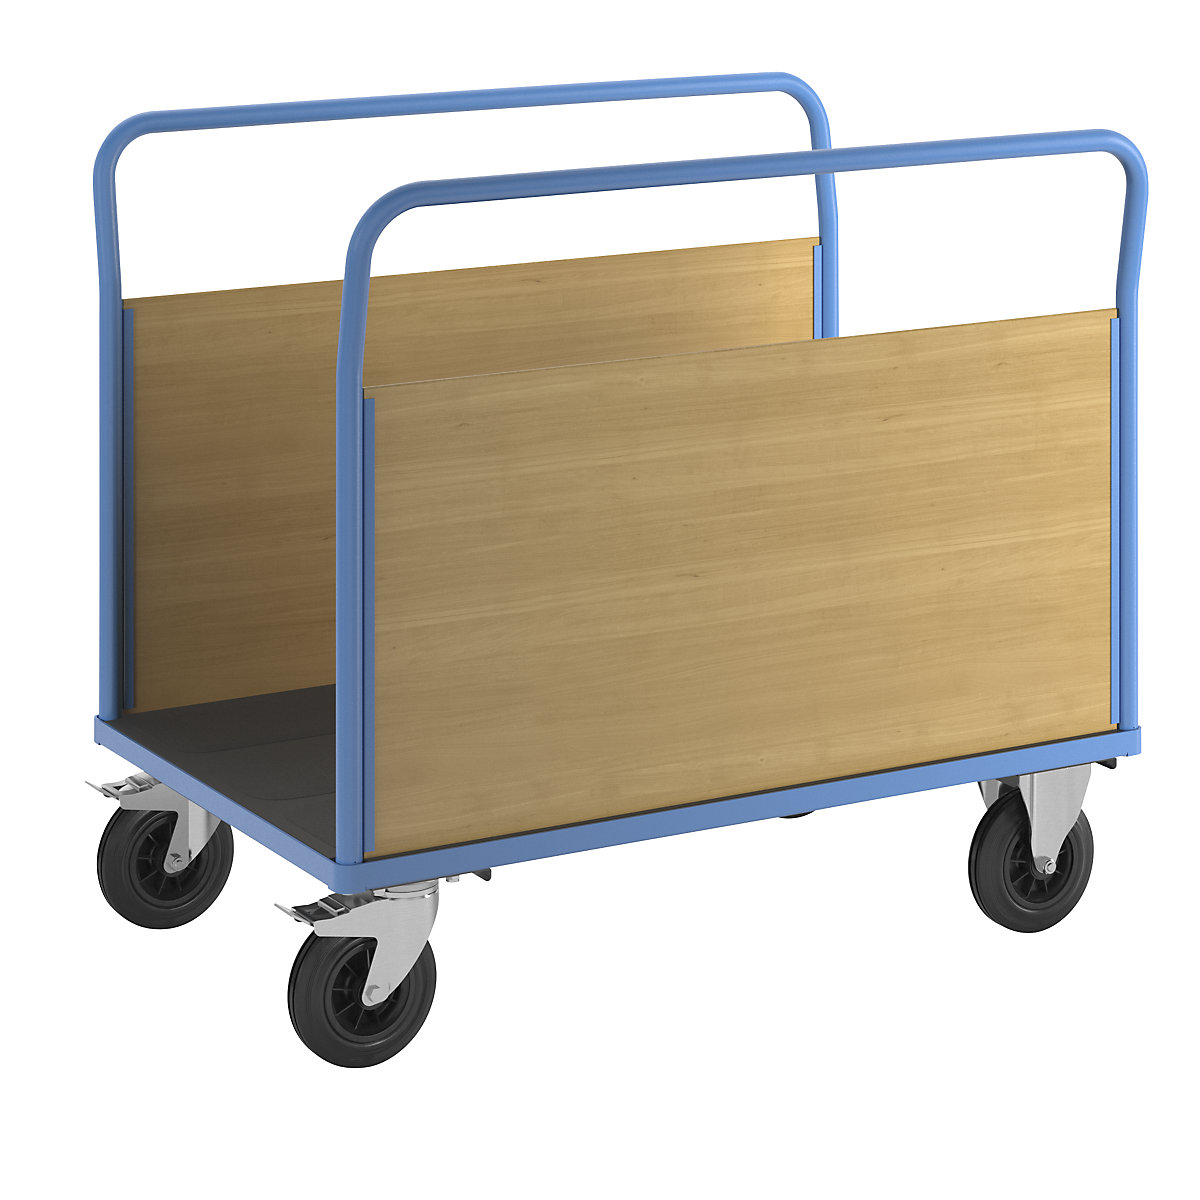 Platformwagen met houten wanden – eurokraft pro